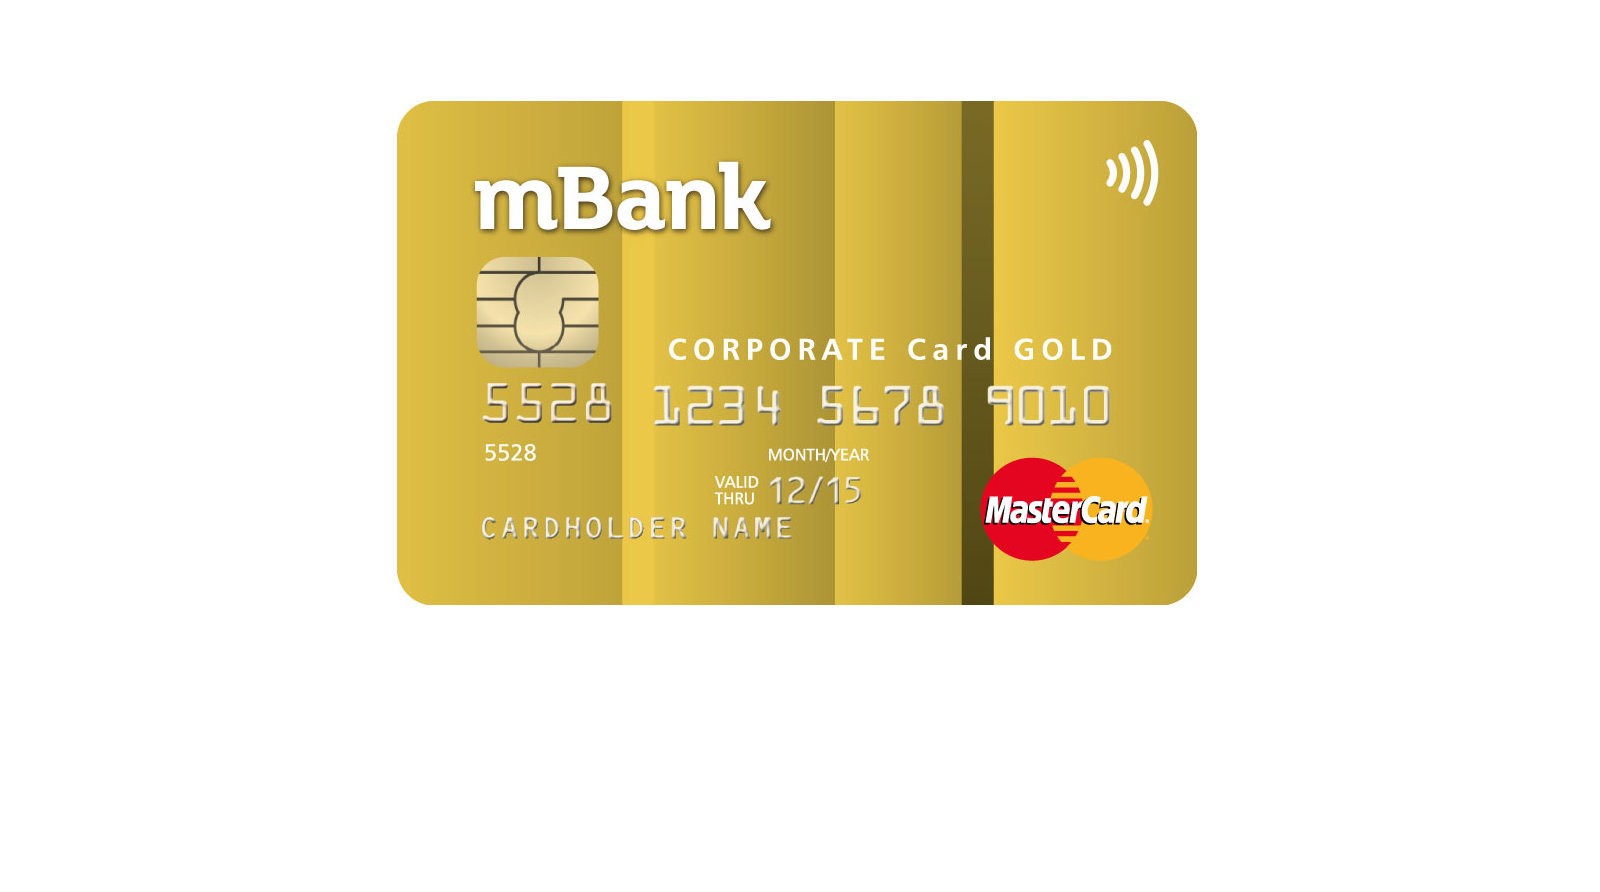 Podczas awarii systemu MasterCard mBank źle zaksięgował operacje